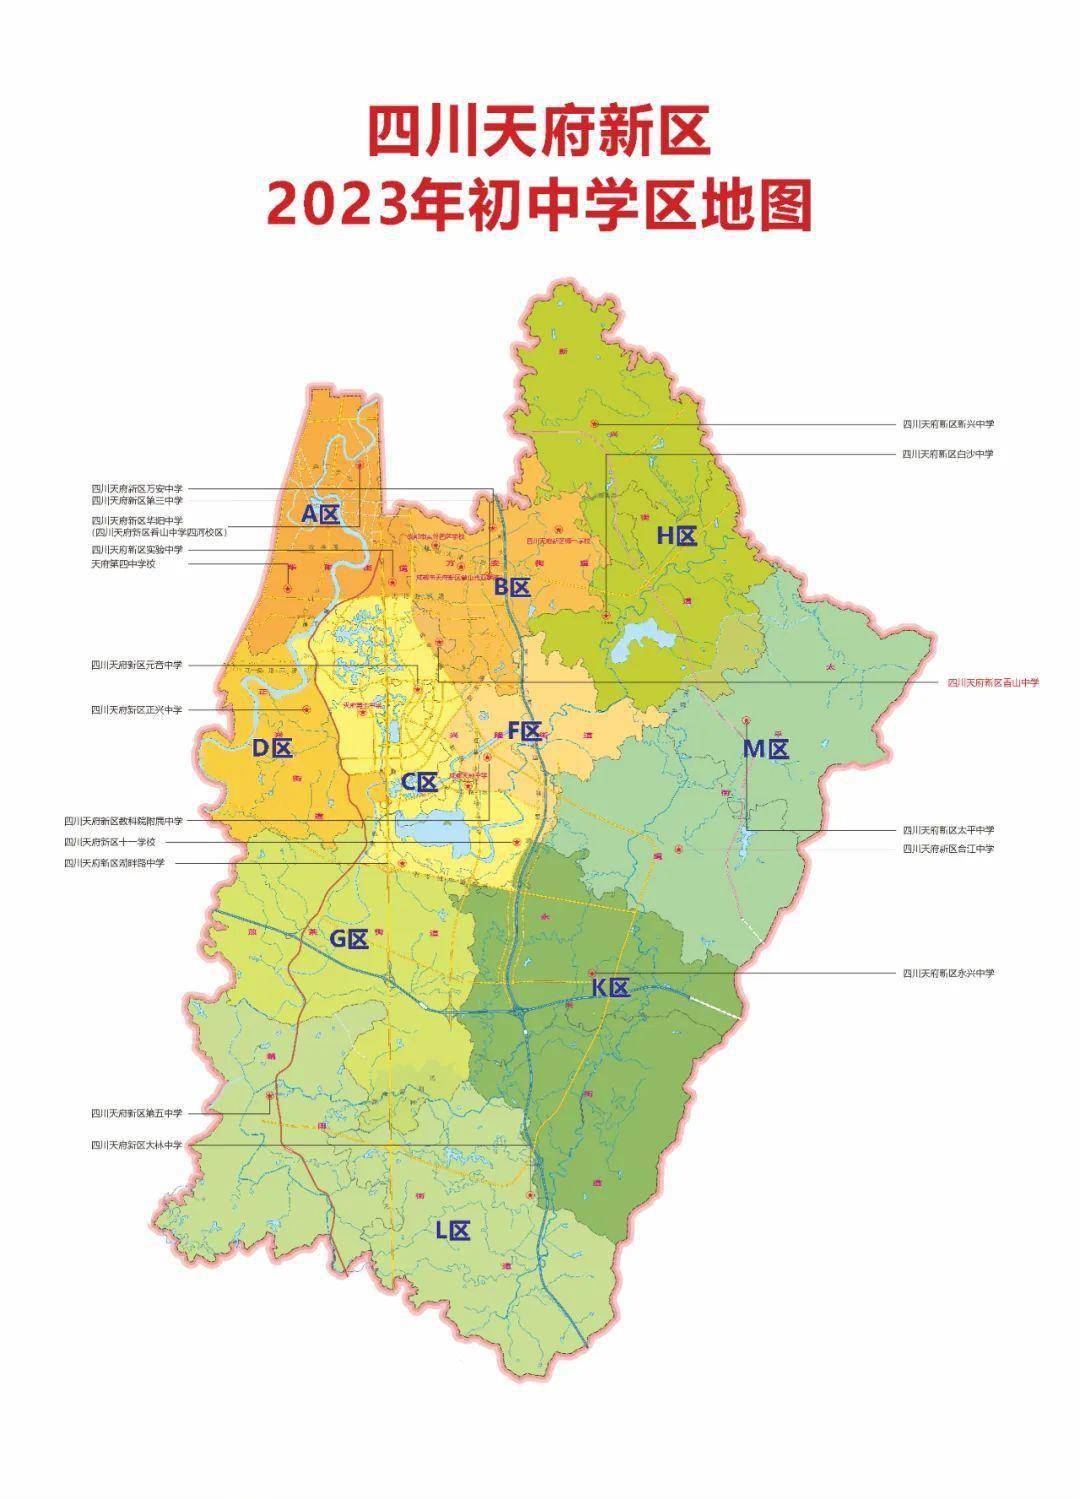 四川天府新区2023年初中学区划分方案发布